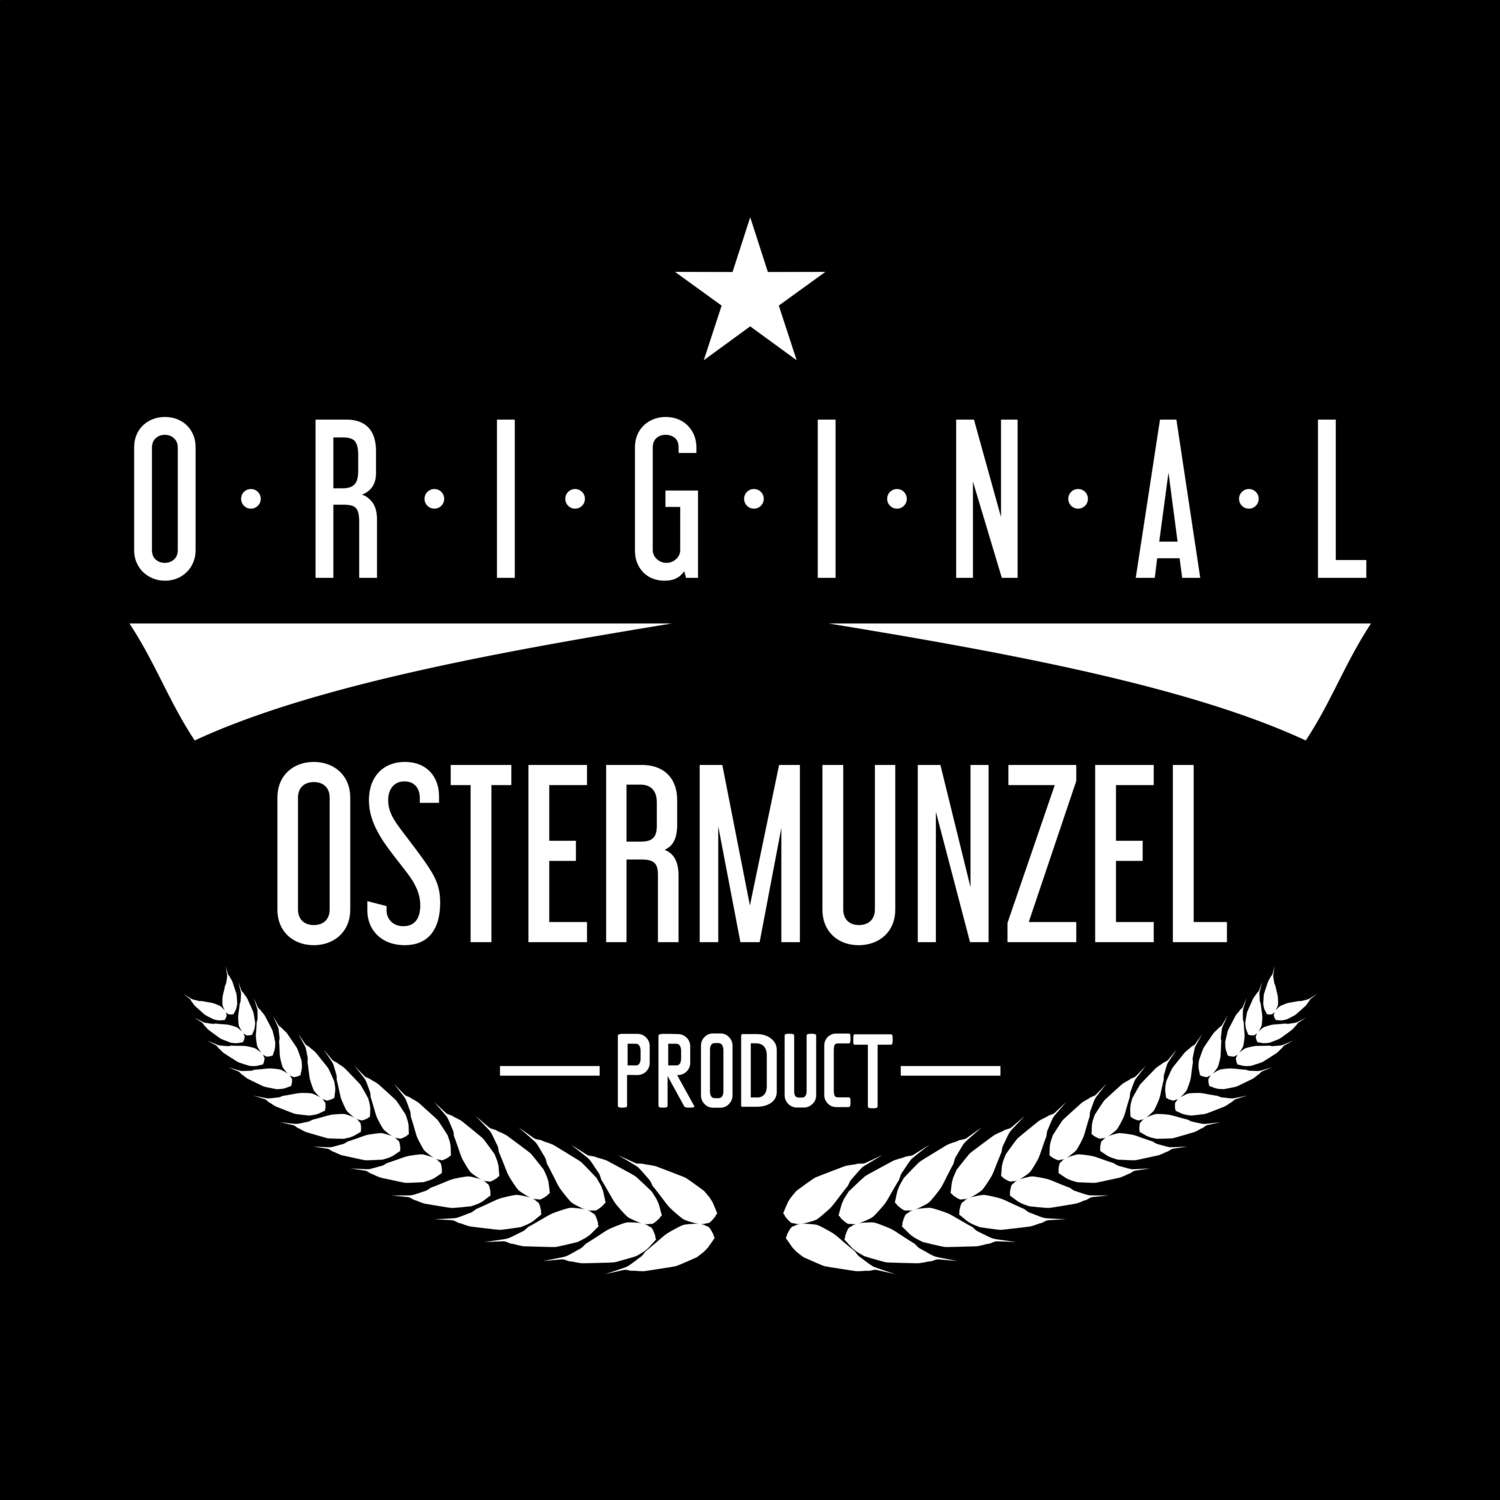 Ostermunzel T-Shirt »Original Product«